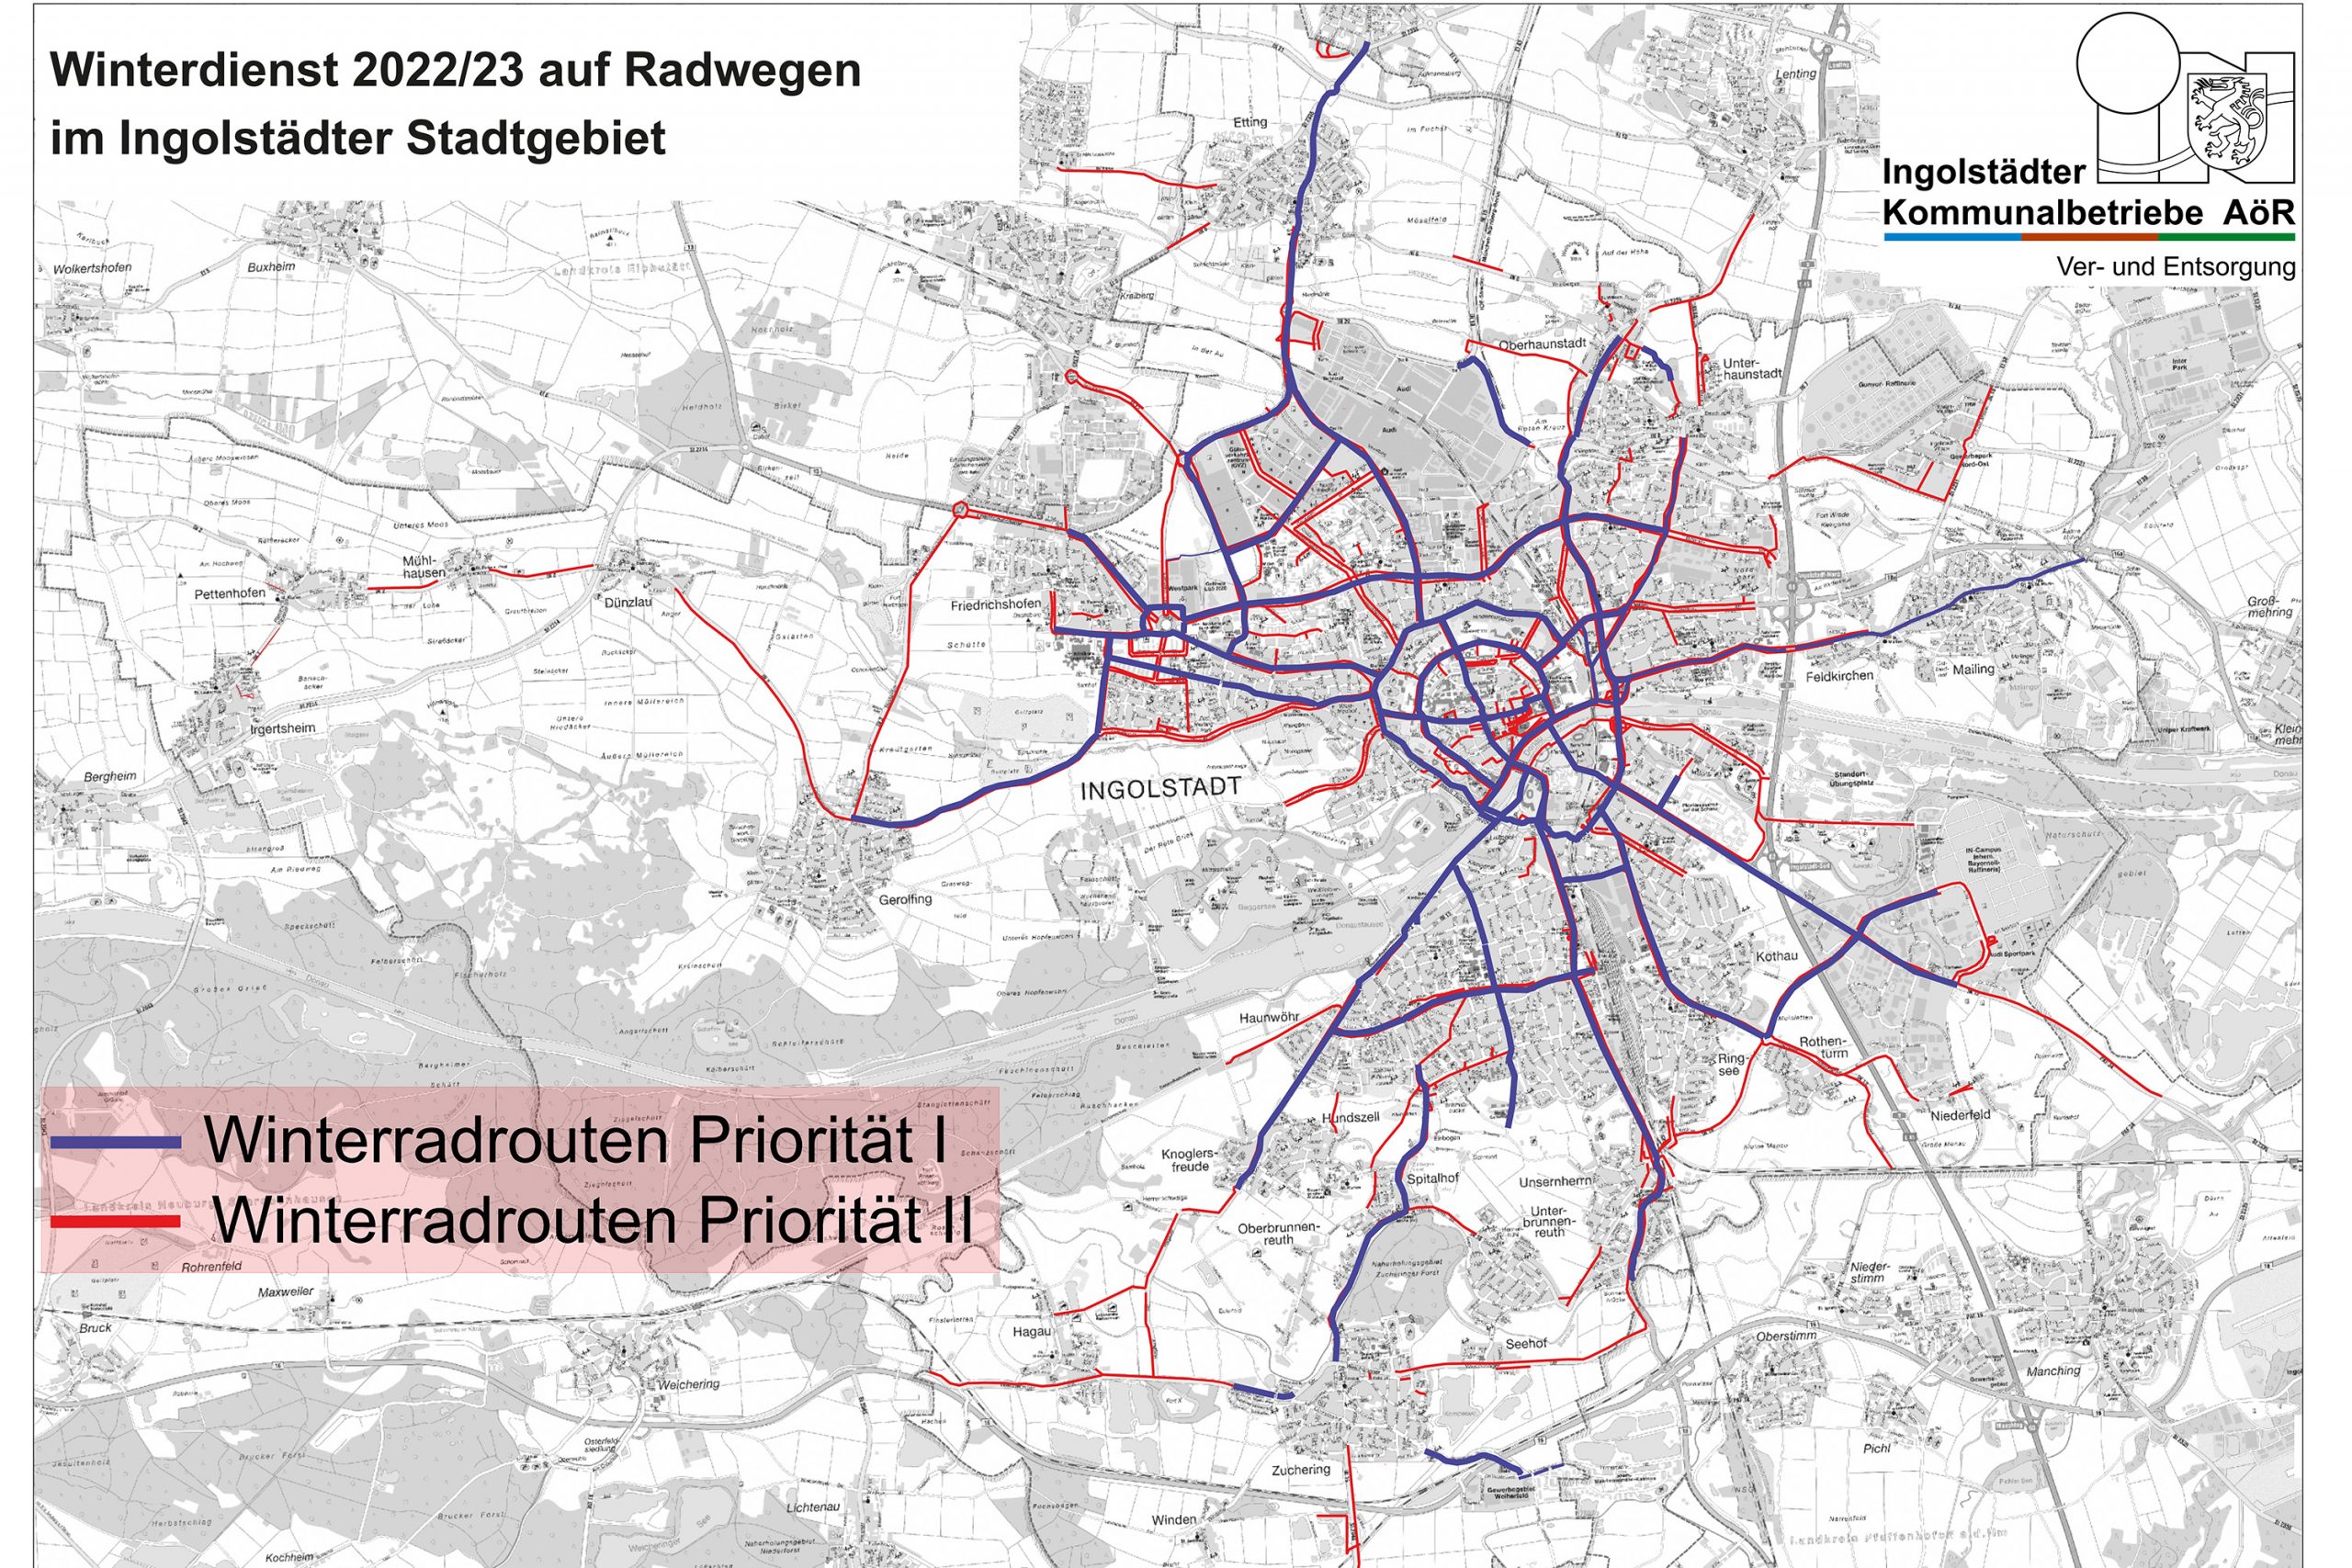 Kartenausschnitt Radwege Winter Kommunalbetreibe 2022